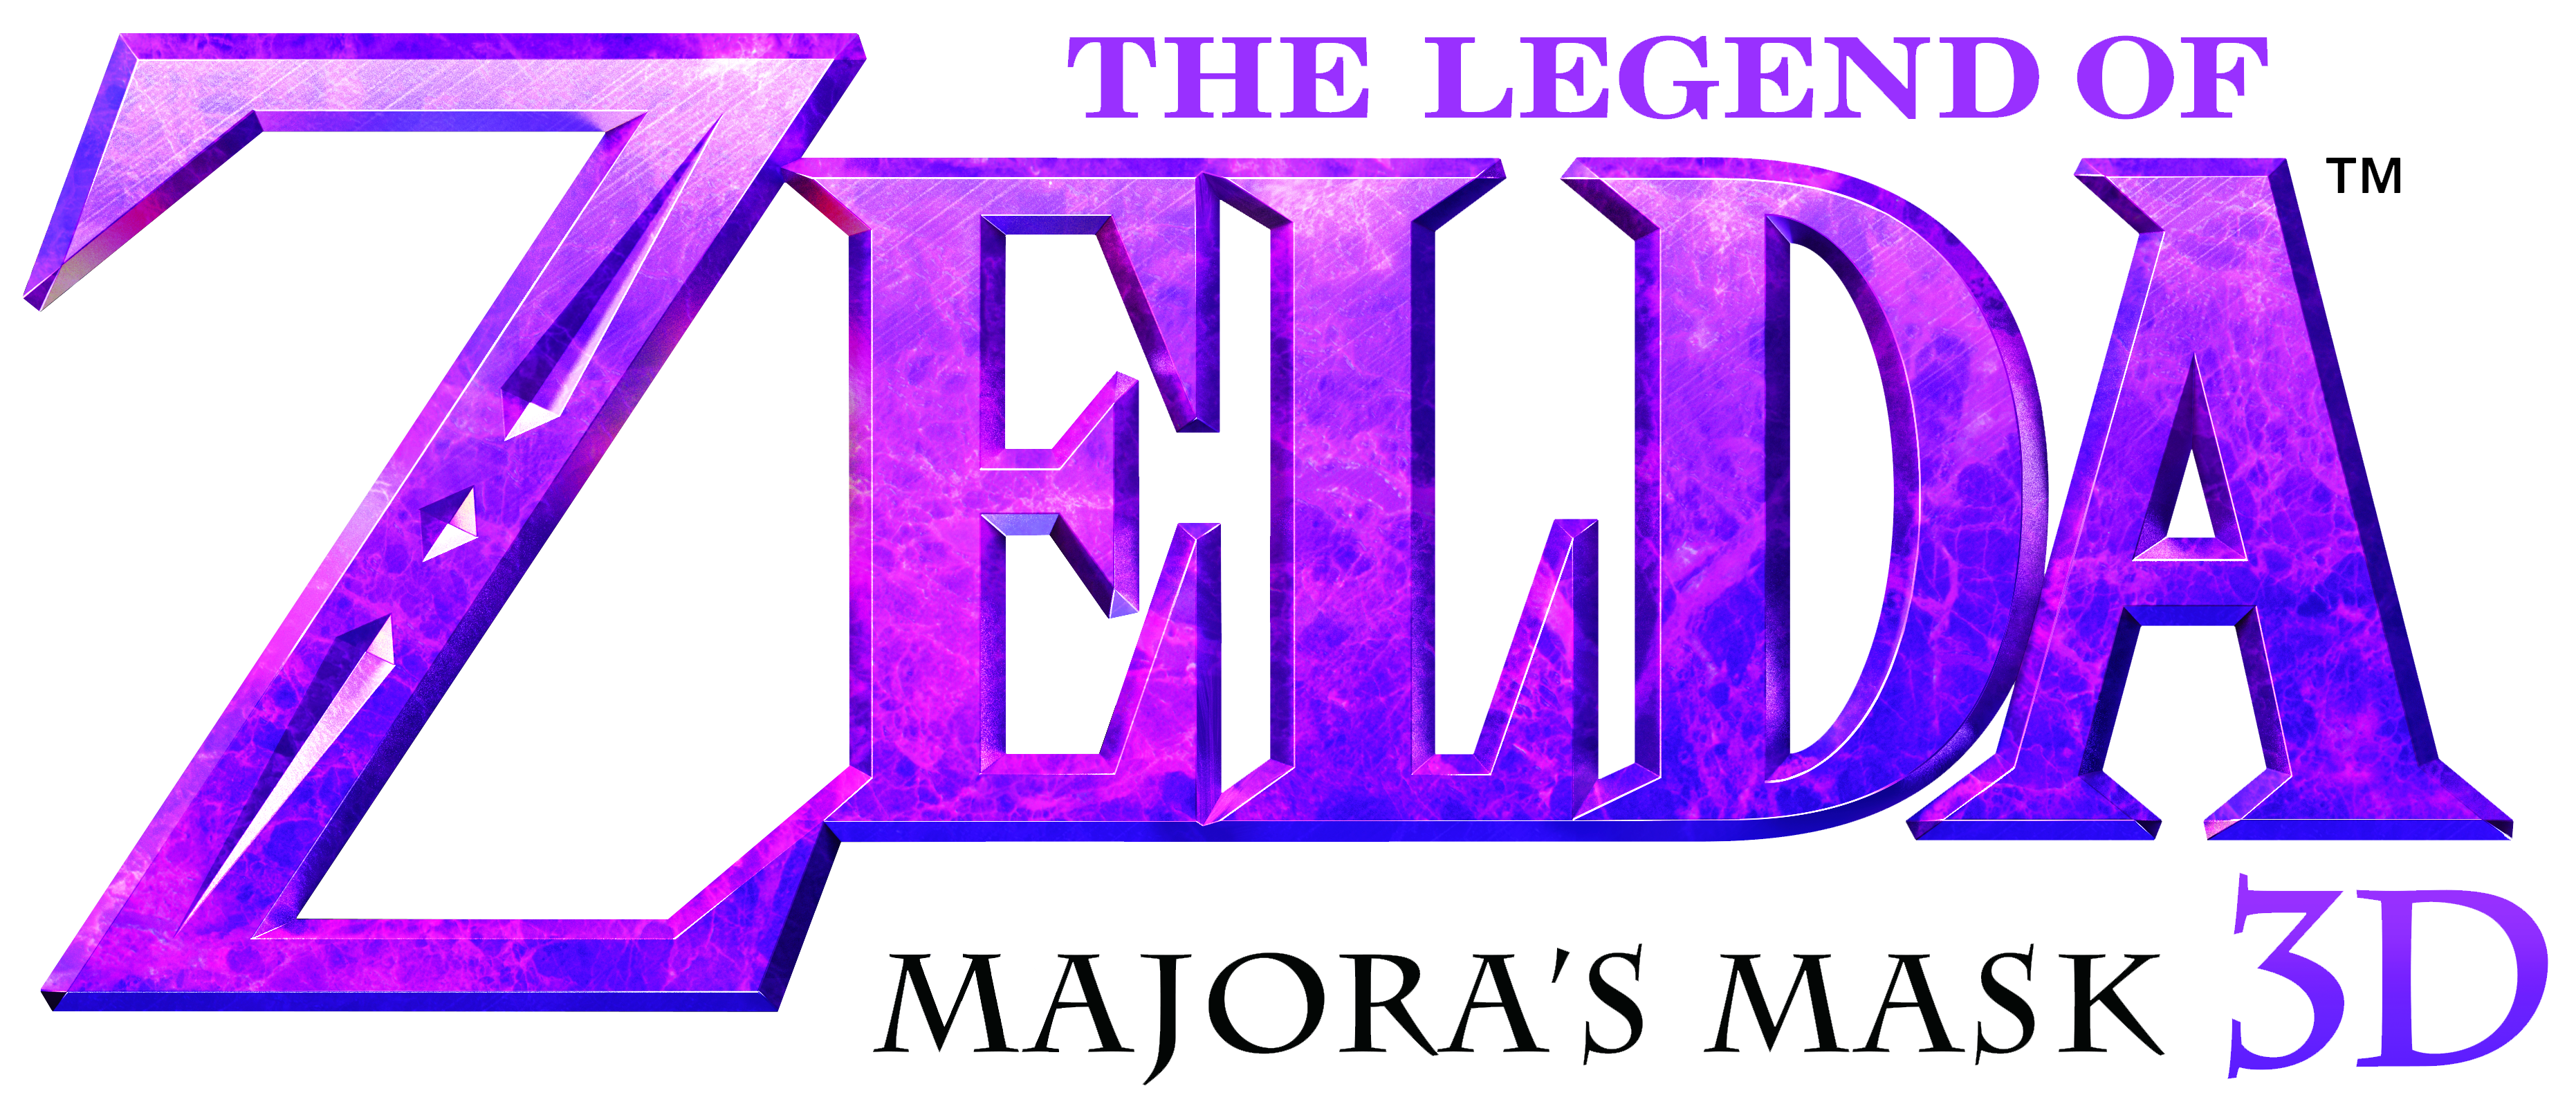 The Legend Of Zelda Majora’s Mask Logo PNG HD Photos